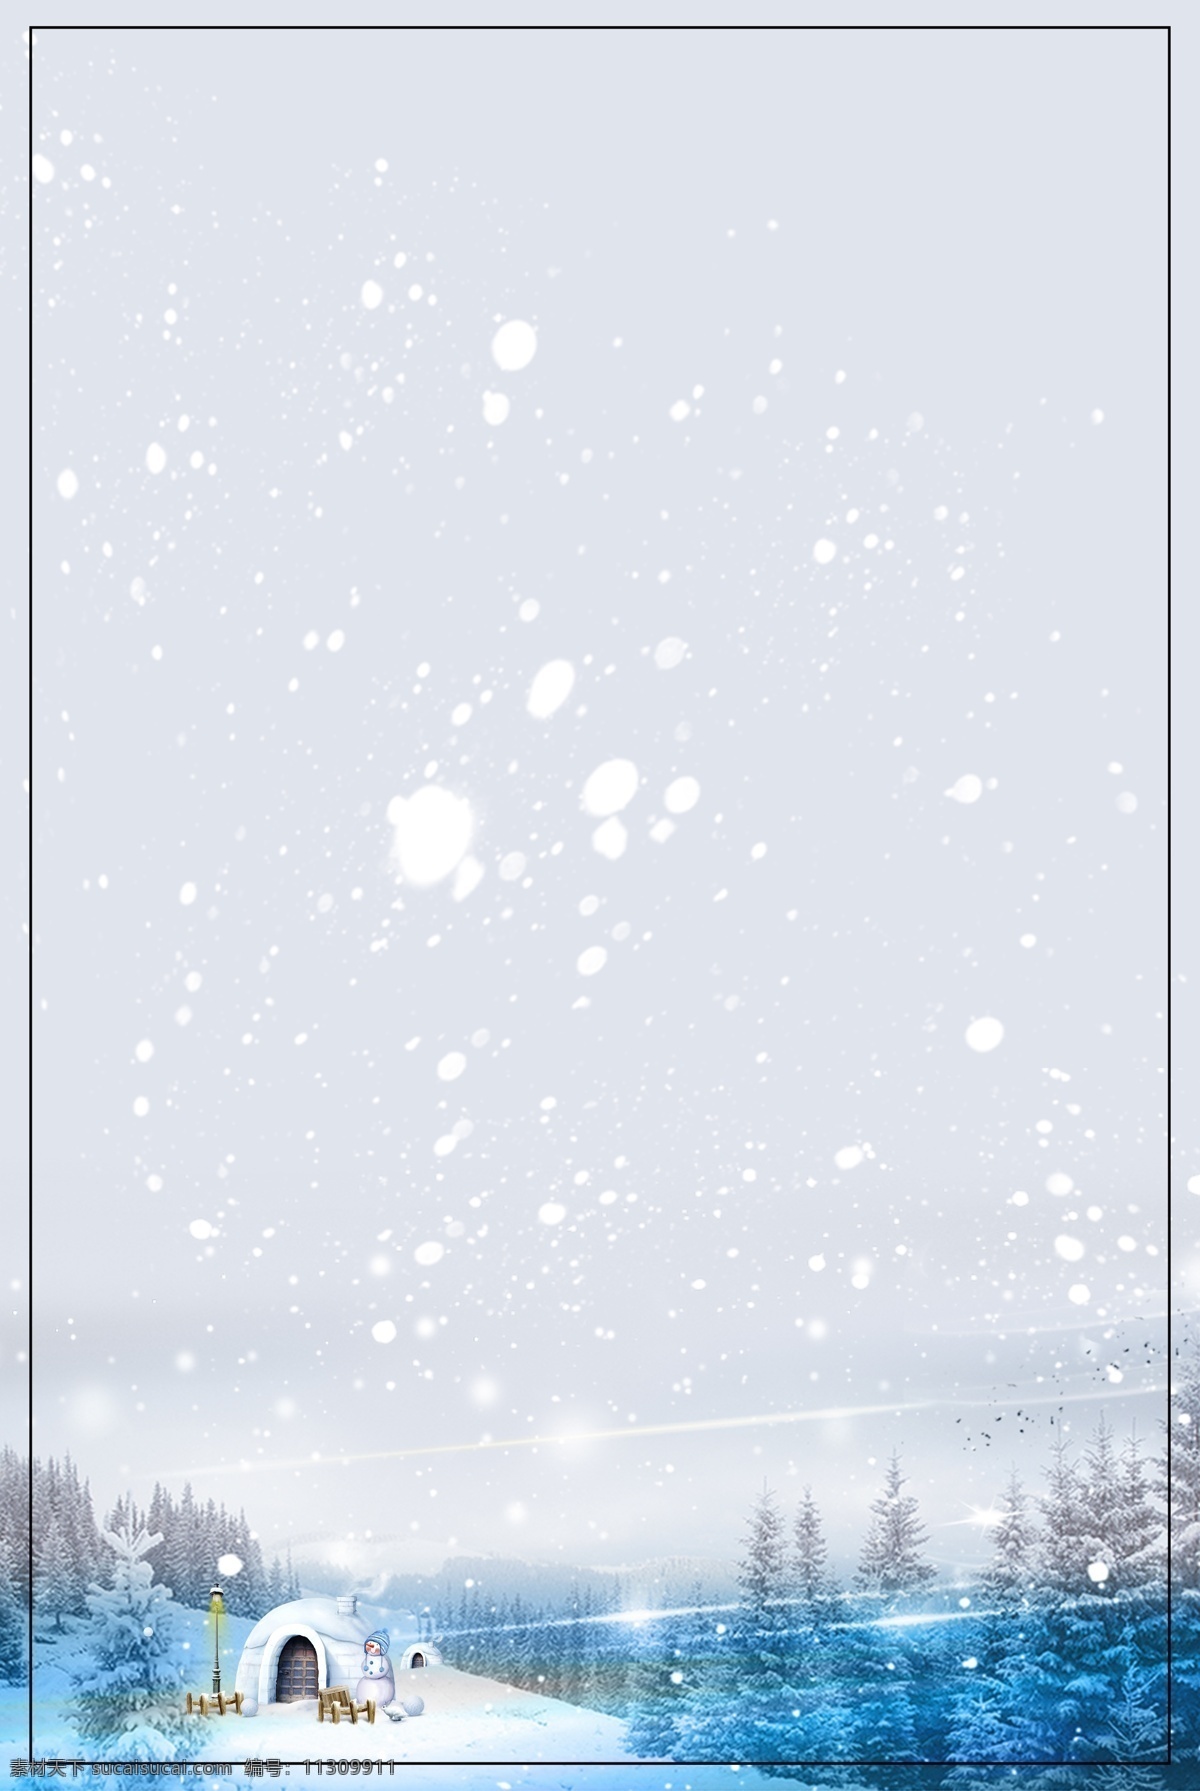 蓝色 浪漫 冬季 海报 背景 冬季吊旗 冬天背景图片 冬天海报 冬天海报设计 冬天下雪 冬天雪景 冬天雪人 寒冷的冬天 雪地背景 雪树